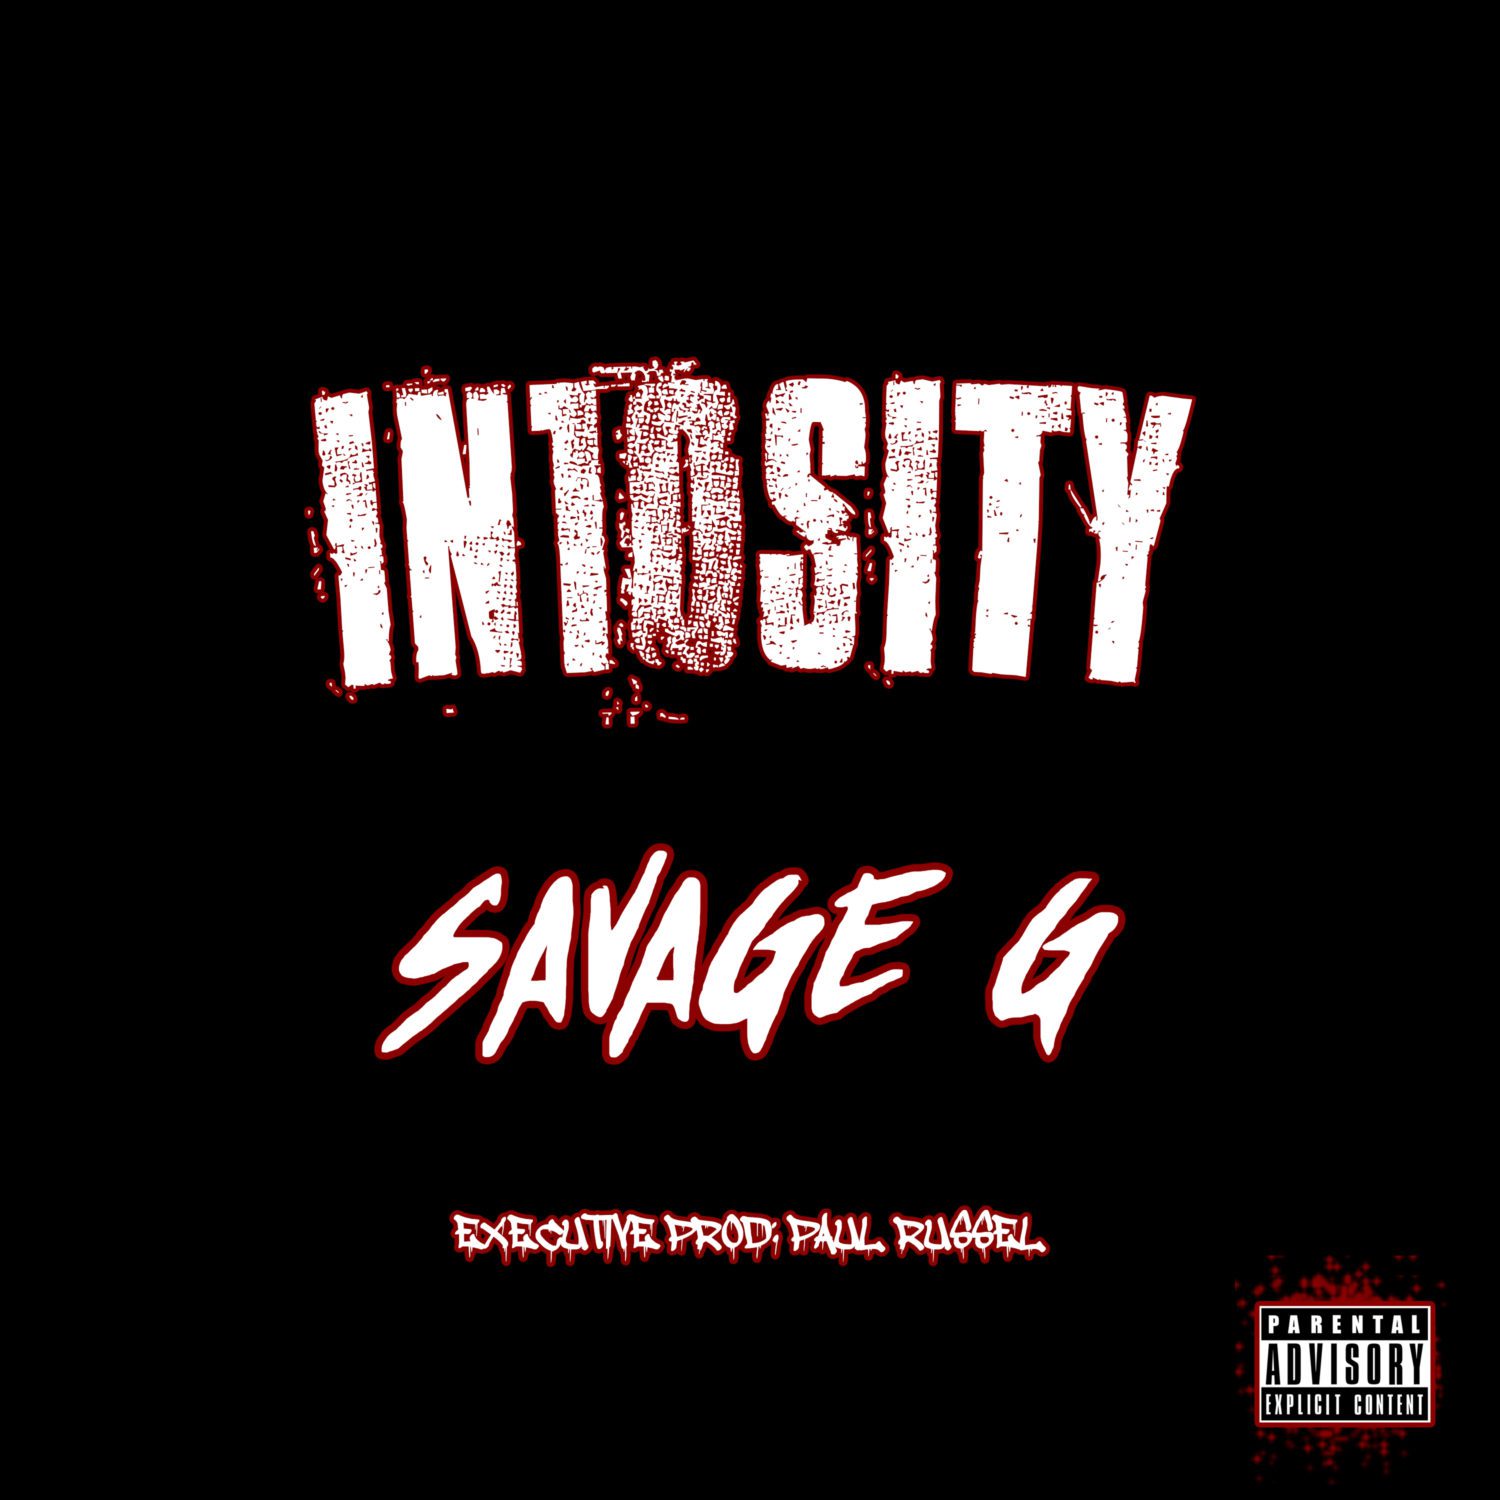 Savage G - "IN10SITY" (Mixtape)